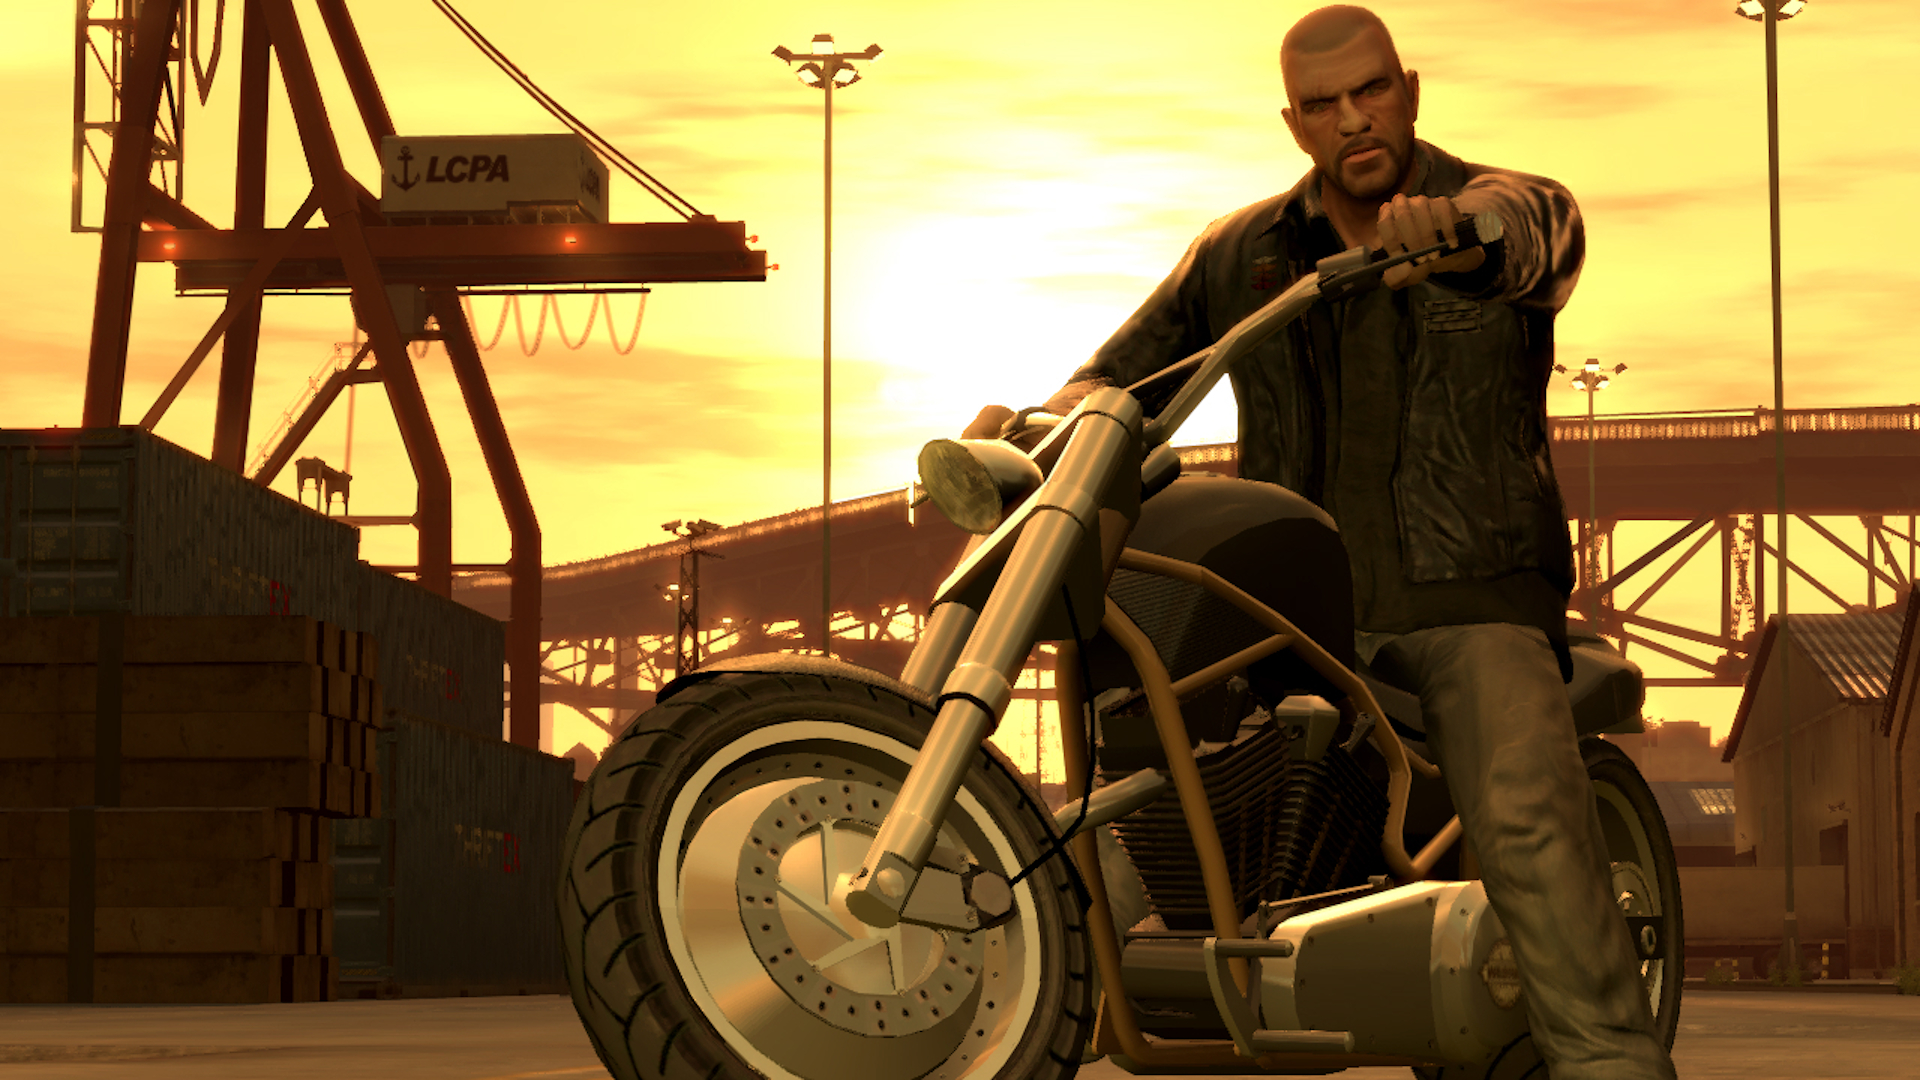 GTA 4 cheat codes: A biker staring menacingly at the camera in Liberty City at sunset.